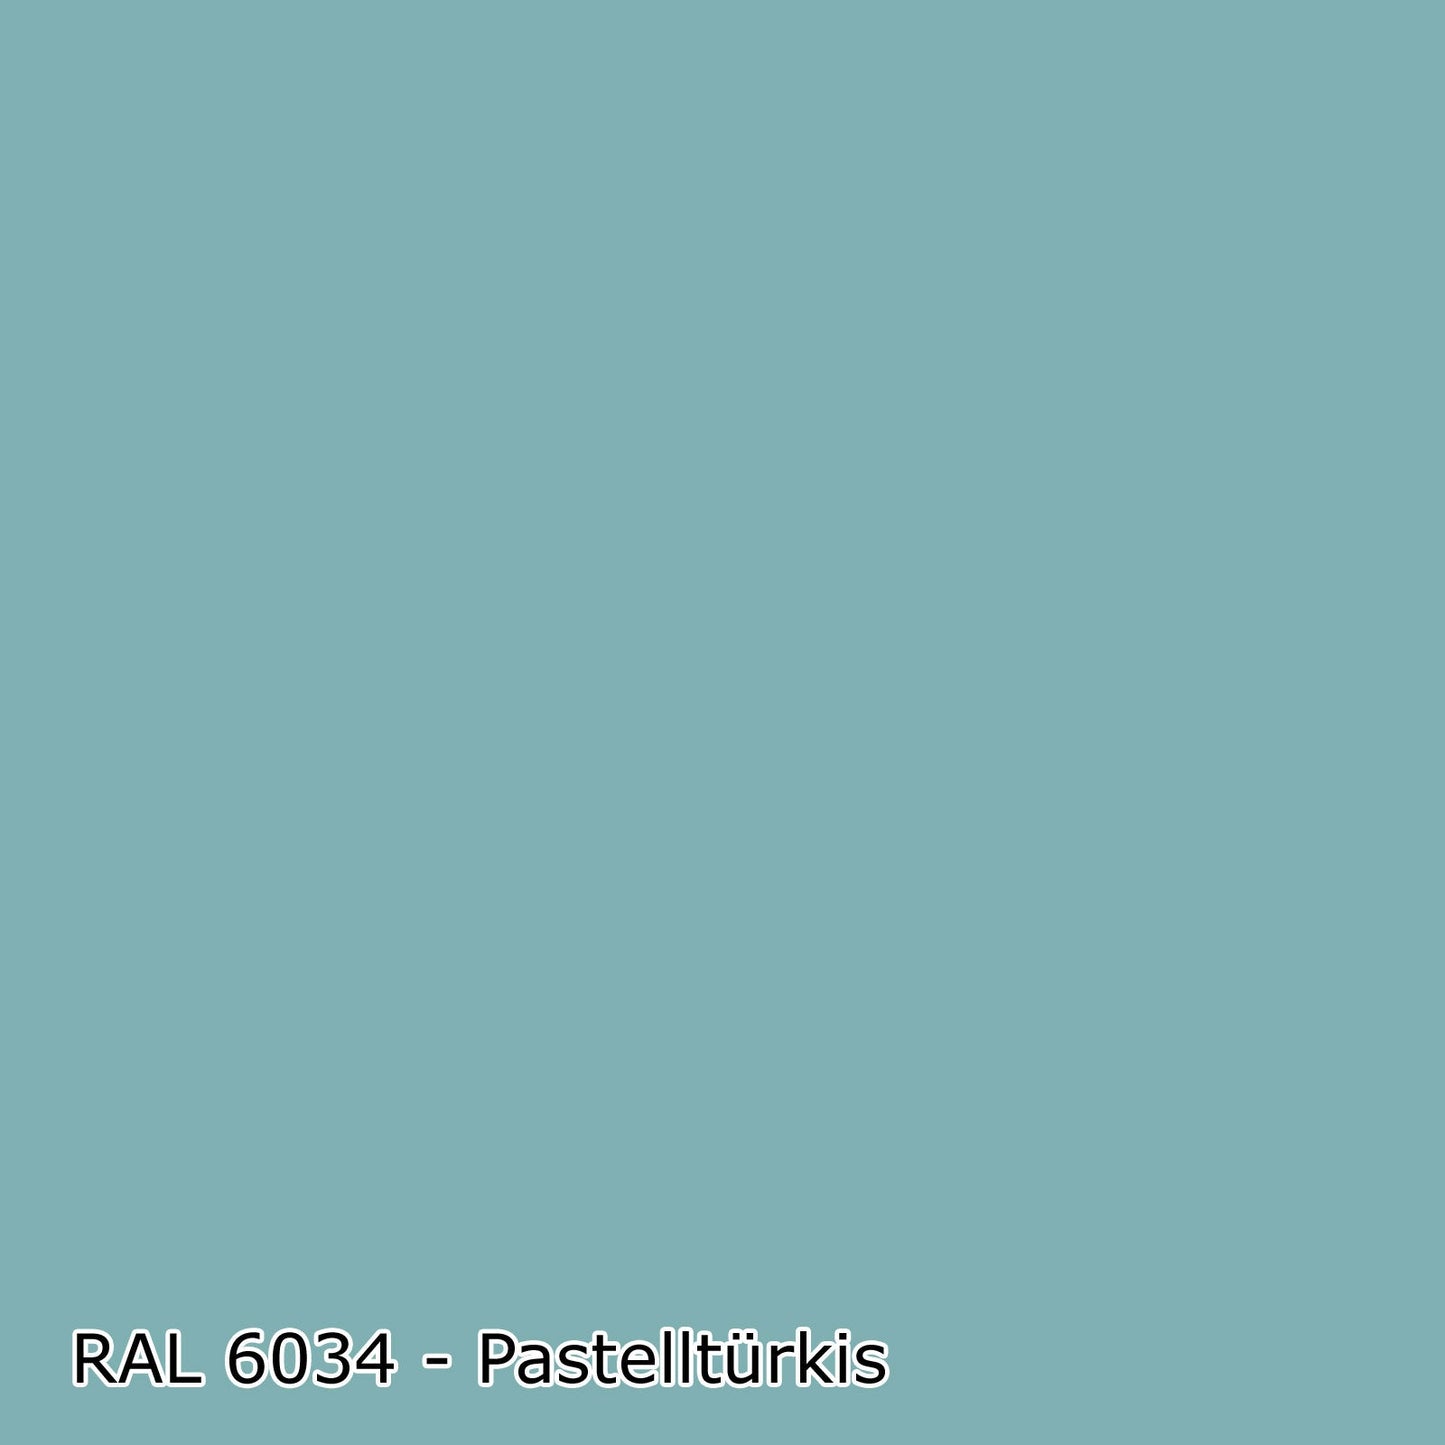 10 L Latexfarbe, RAL Farbwahl - MATT (RAL 6008 - 9018)